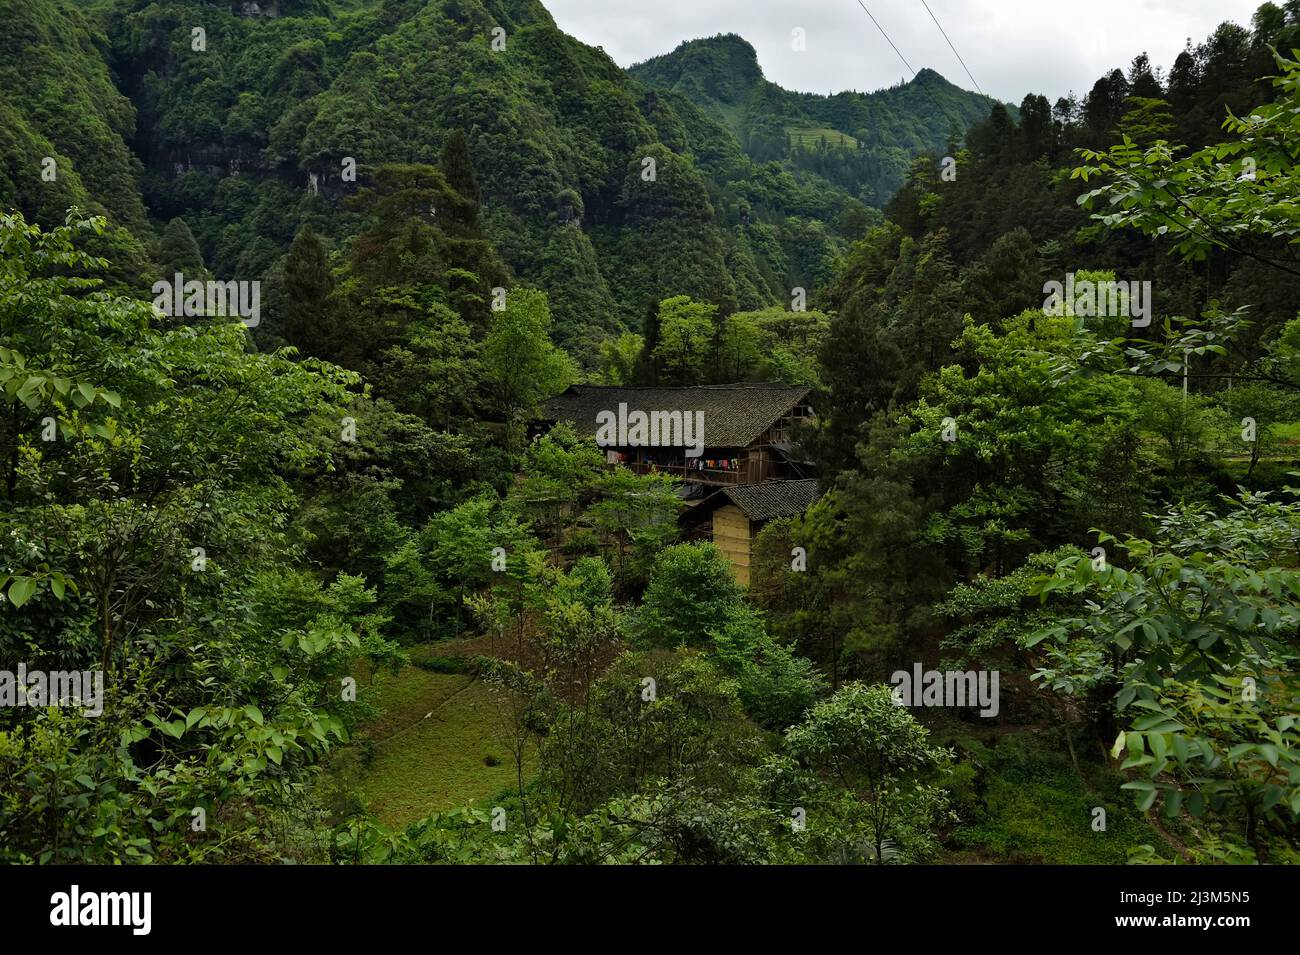 Les montagnes de calcaire végétalisées se dressent au-dessus d'une structure construite; Wulong, province de Chongqing, Chine. Banque D'Images